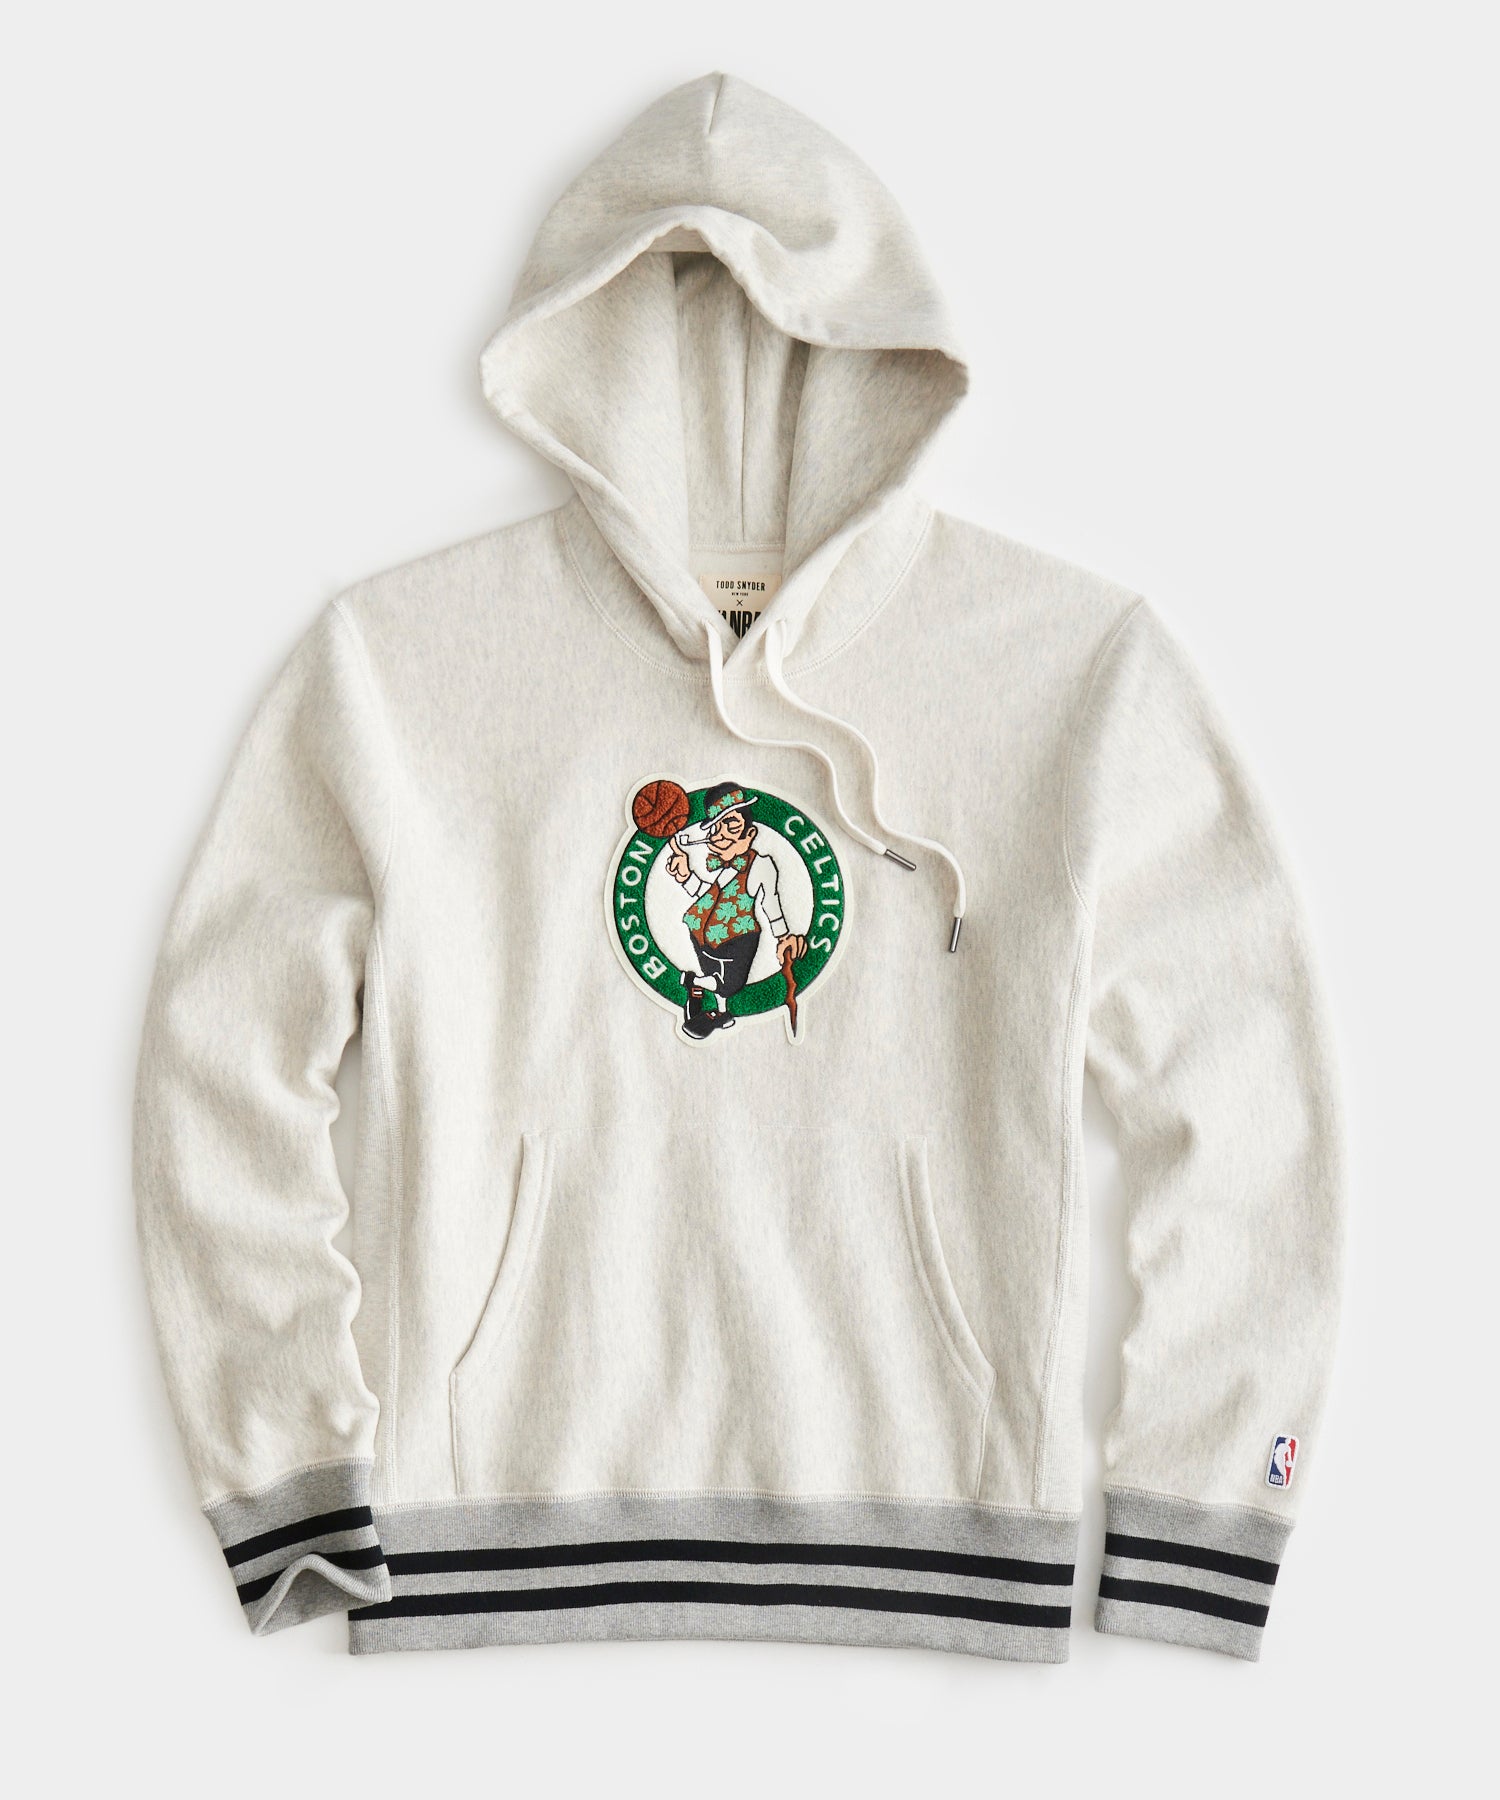 Official Boston Celtics Hoodies, Celtics Sweatshirts, Pullovers, Celtics  Hoodie